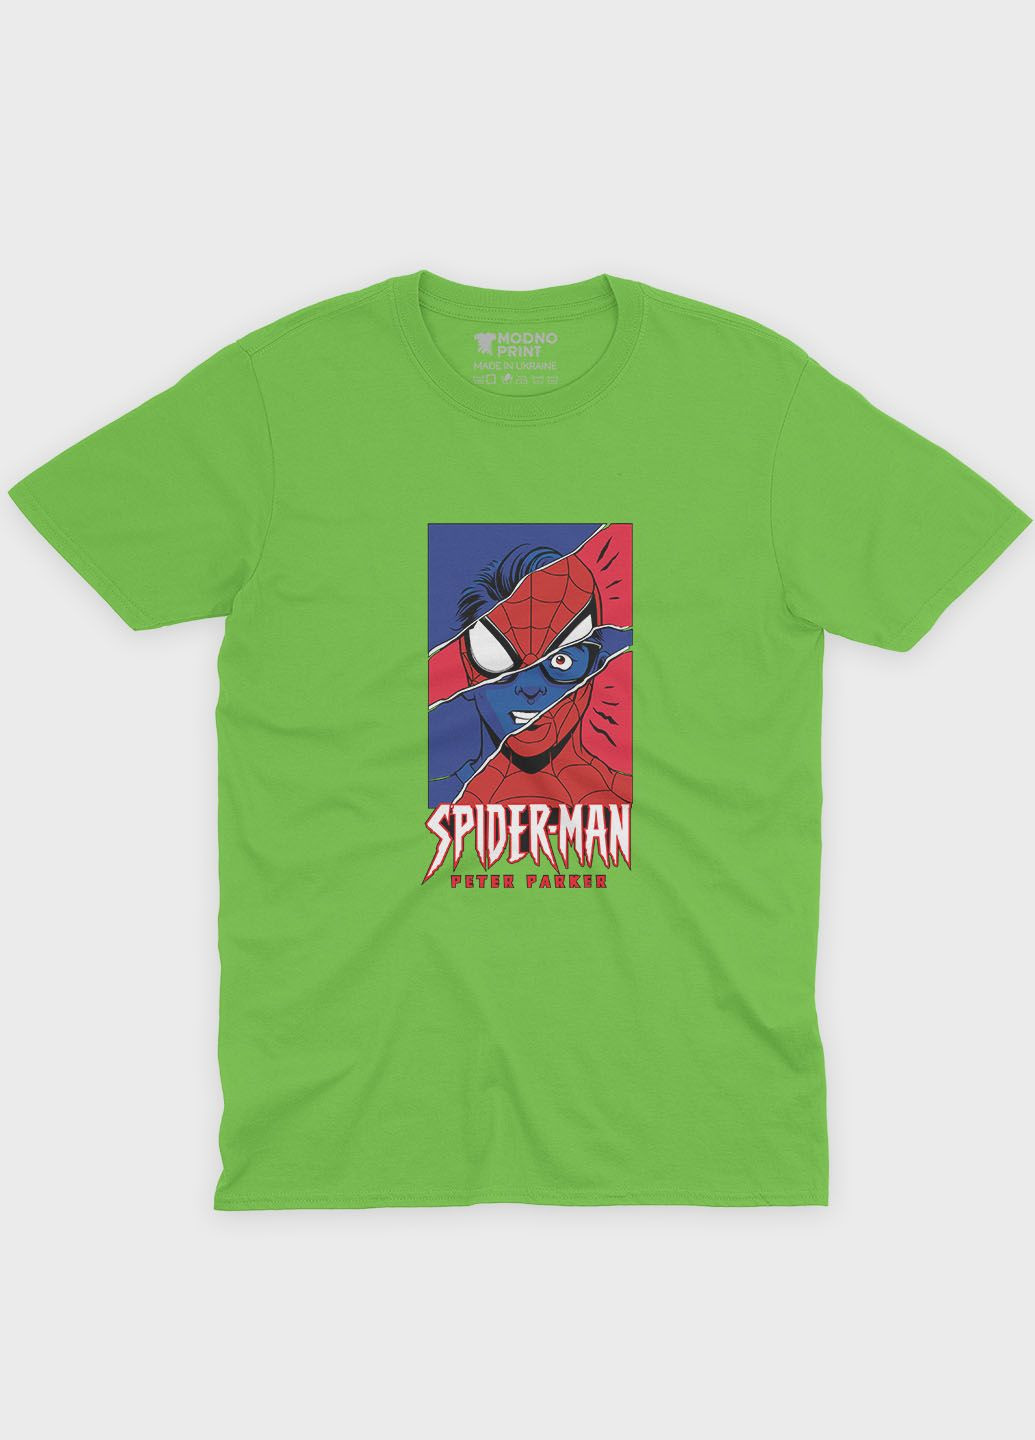 Салатовая демисезонная футболка для мальчика с принтом супергероя - человек-паук (ts001-1-kiw-006-014-032-b) Modno